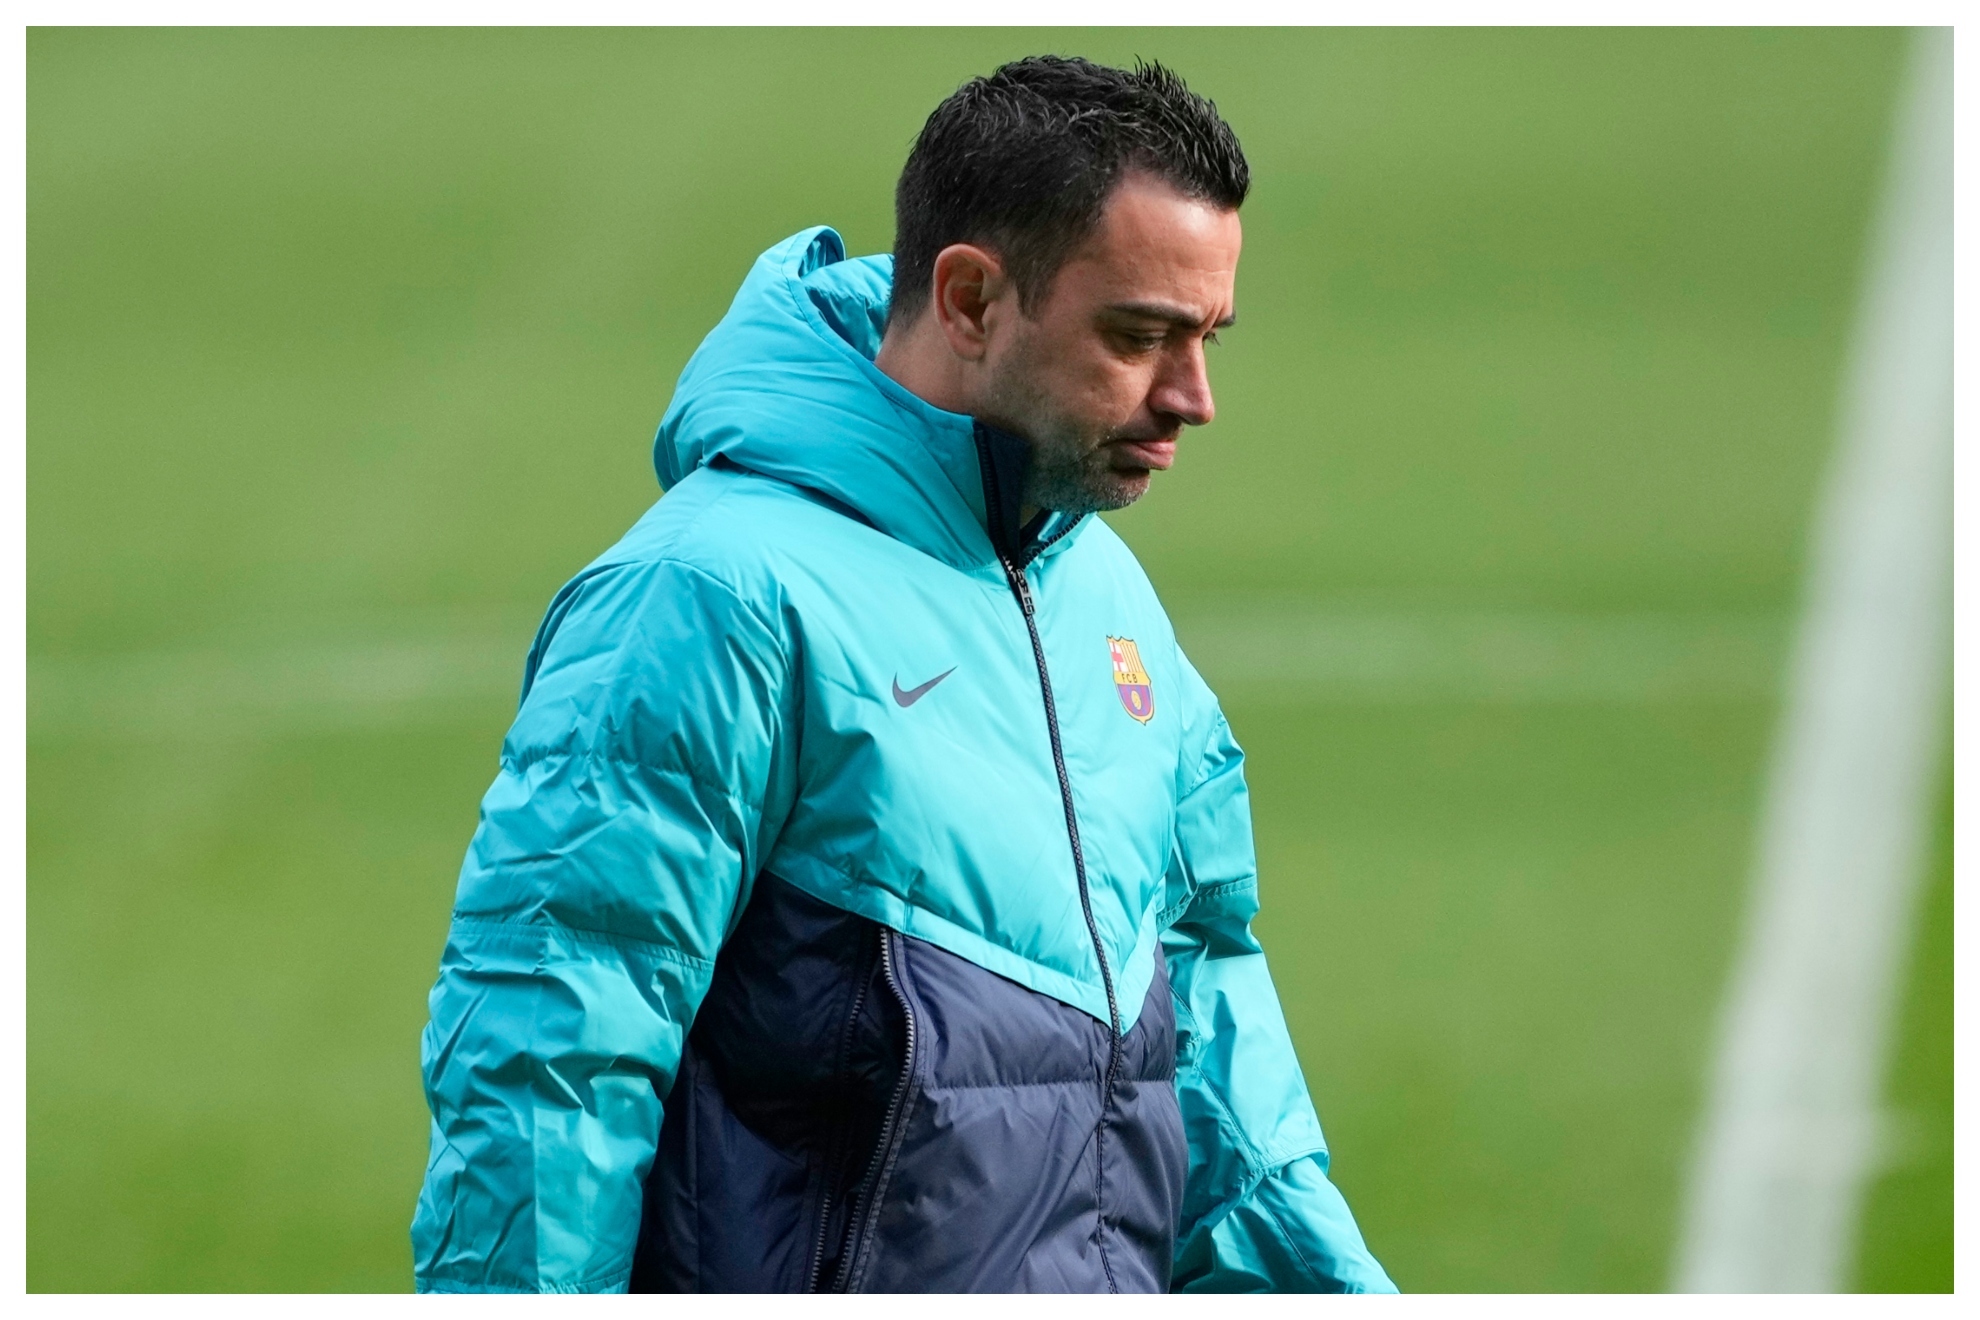 Xavi, en un entrenamiento del Barcelona.